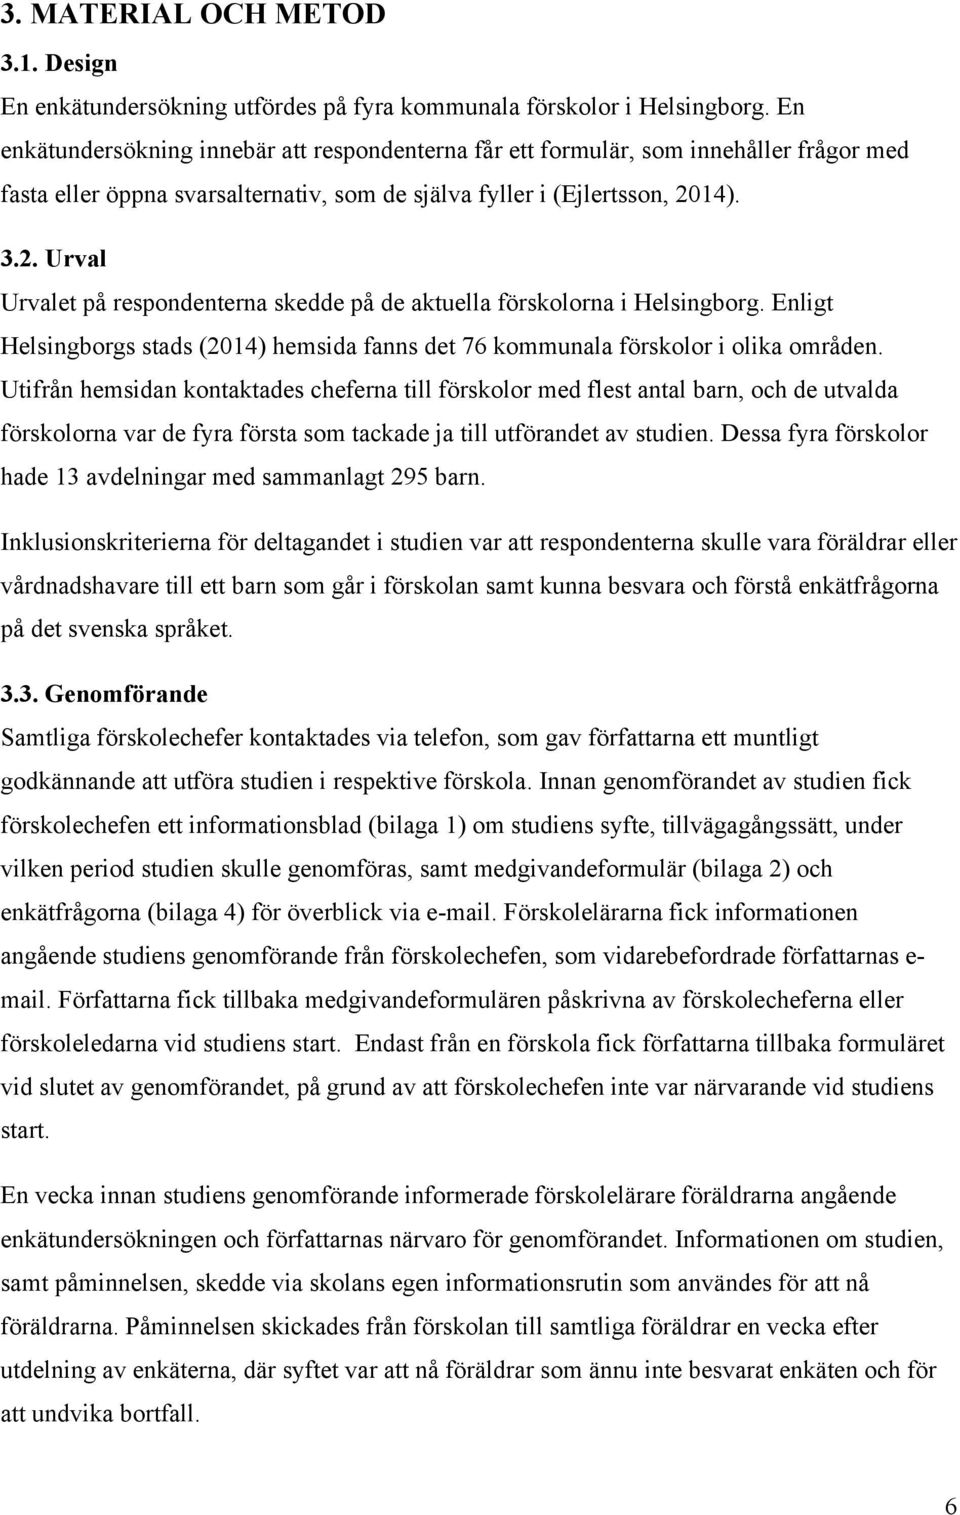 14). 3.2. Urval Urvalet på respondenterna skedde på de aktuella förskolorna i Helsingborg. Enligt Helsingborgs stads (2014) hemsida fanns det 76 kommunala förskolor i olika områden.